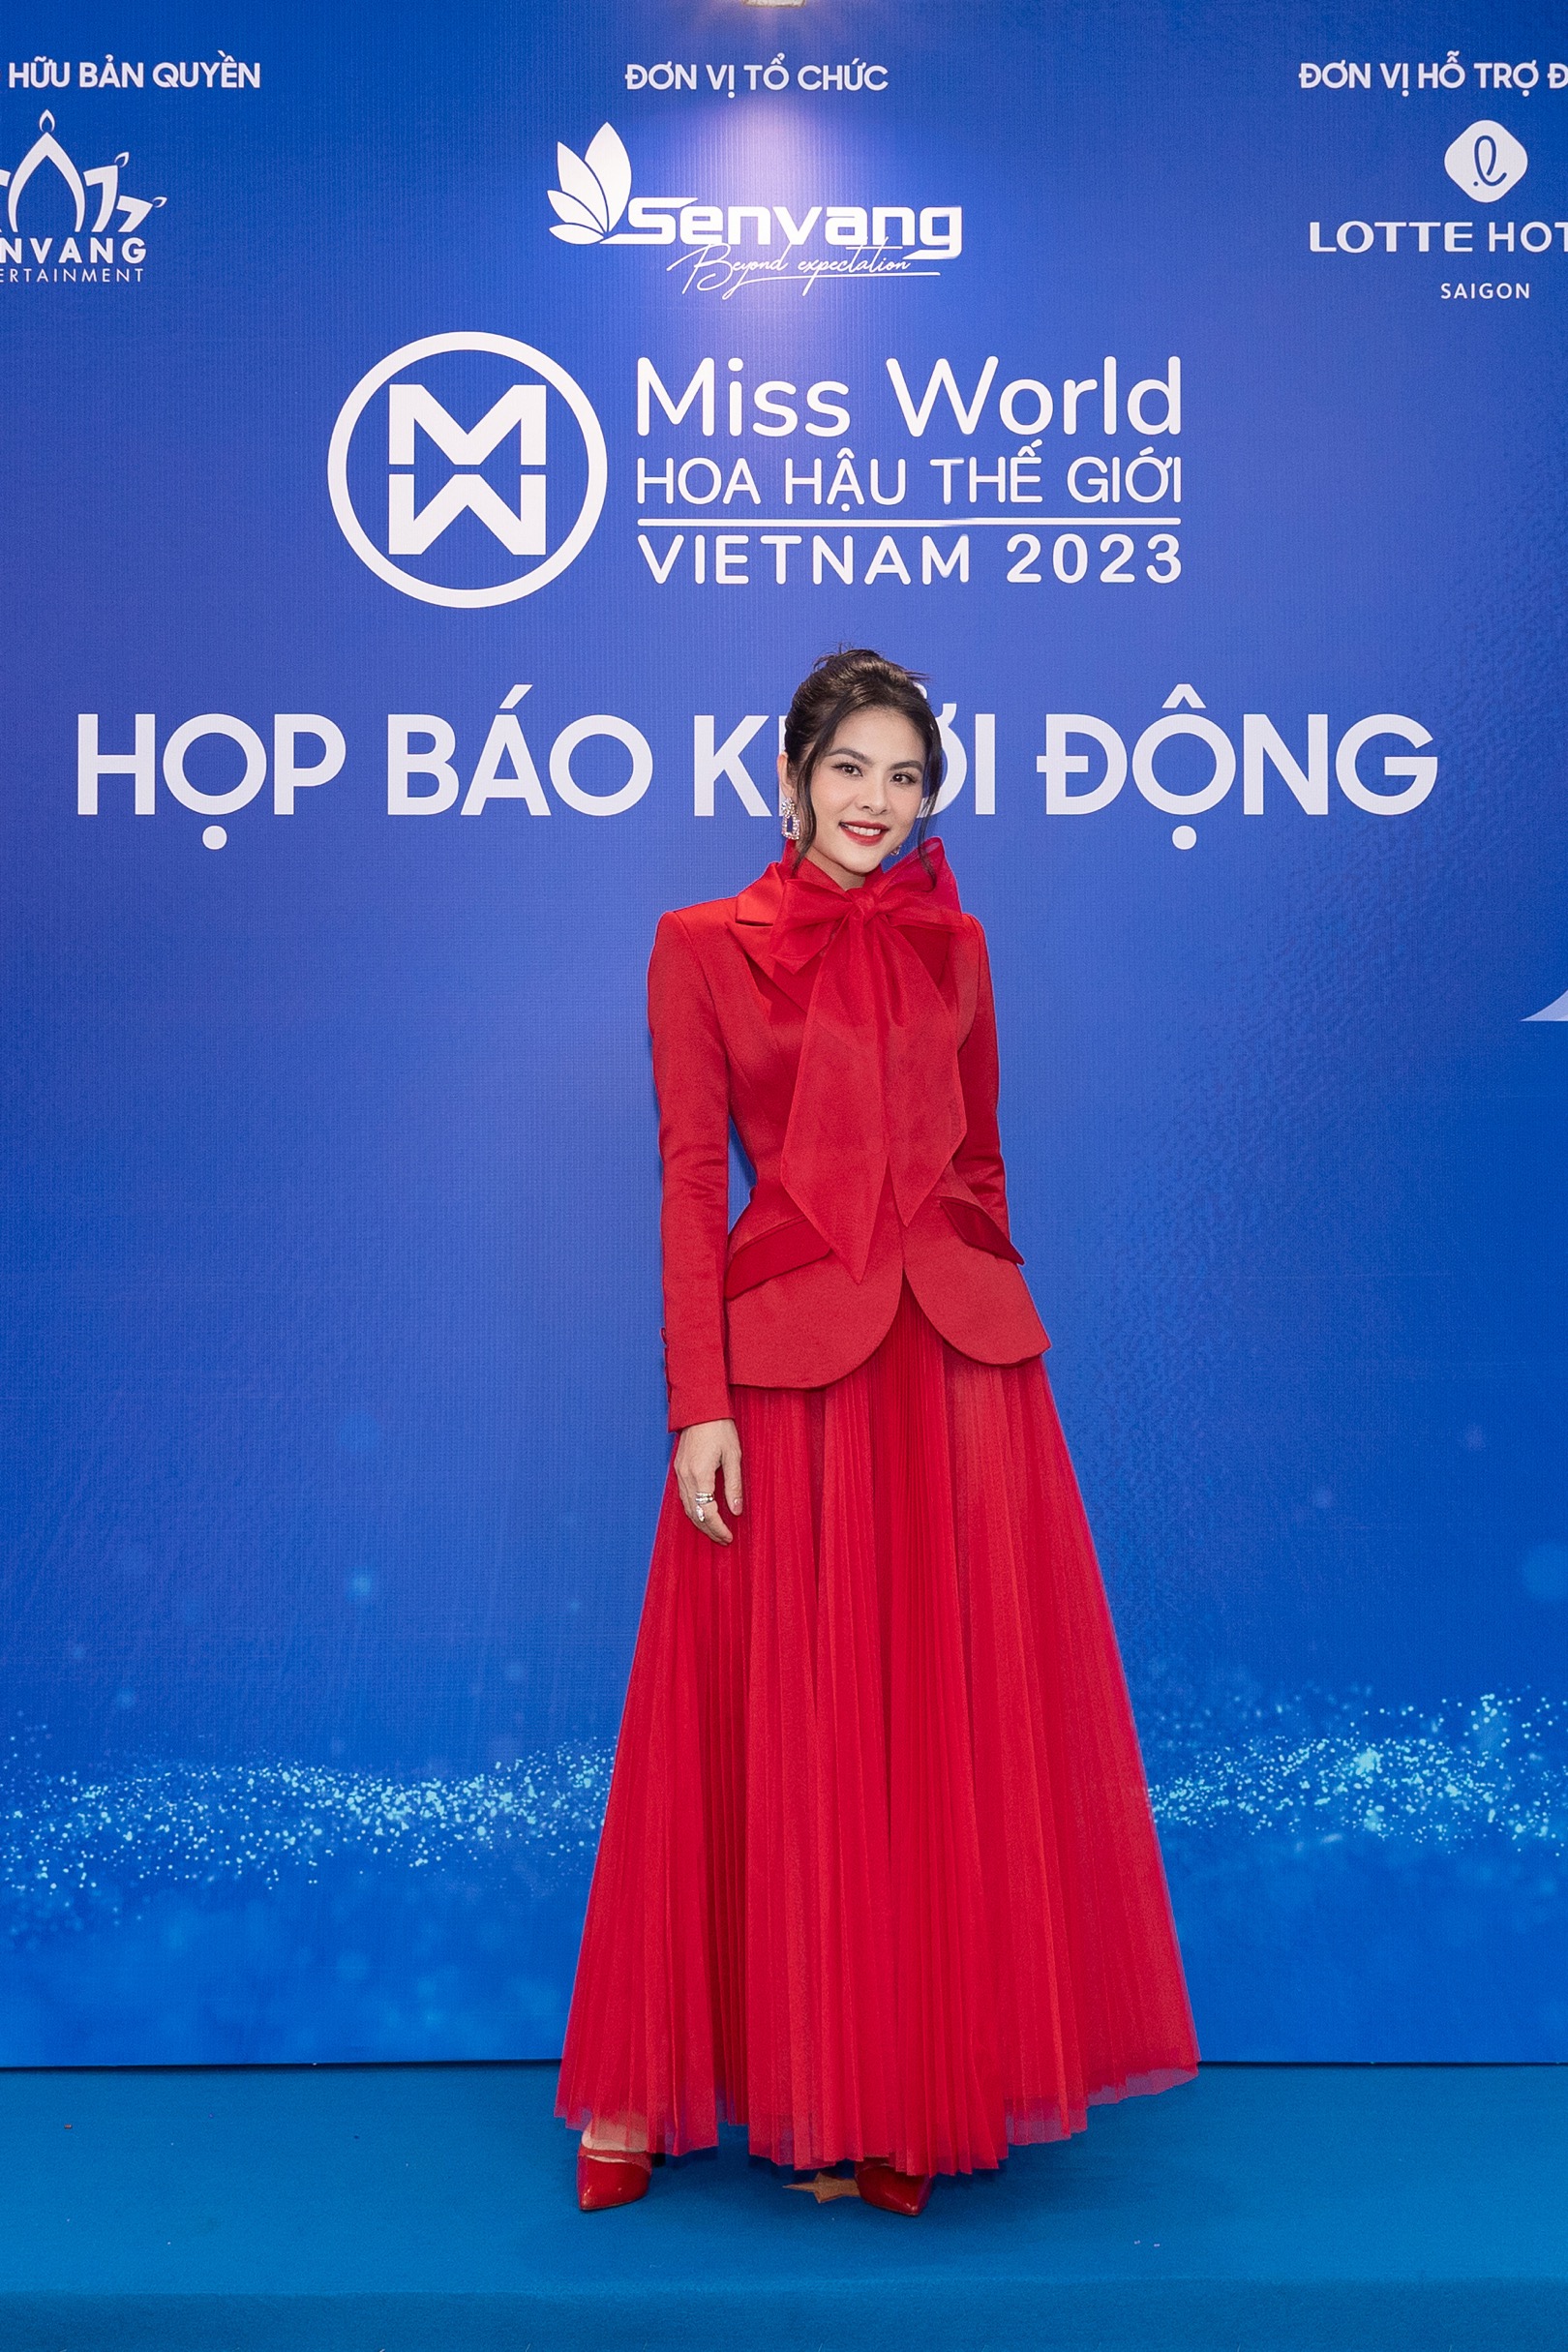 Harper's Bazaar_Thảm đỏ khởi động Miss World Việt Nam_02